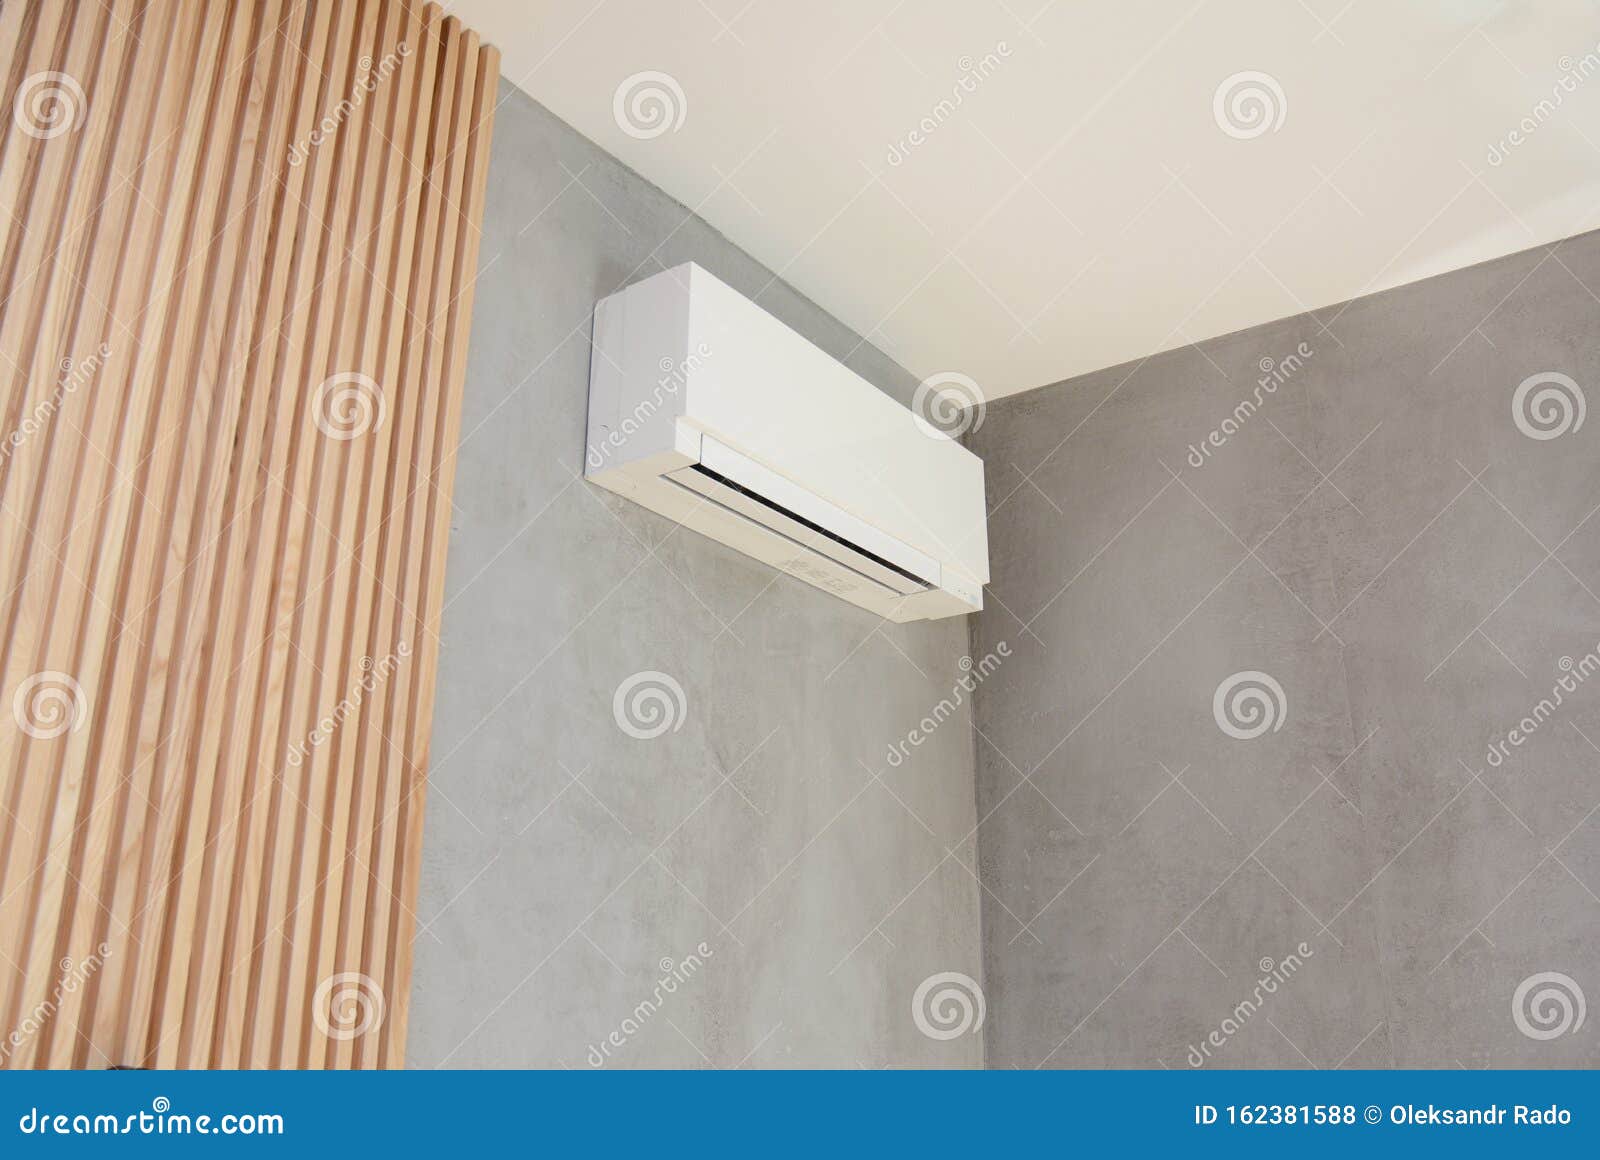 parede-de-madeira-com-ar-condicionado-no-canto-plano-design-para-o-interior-foto-sala-162381588.jpg